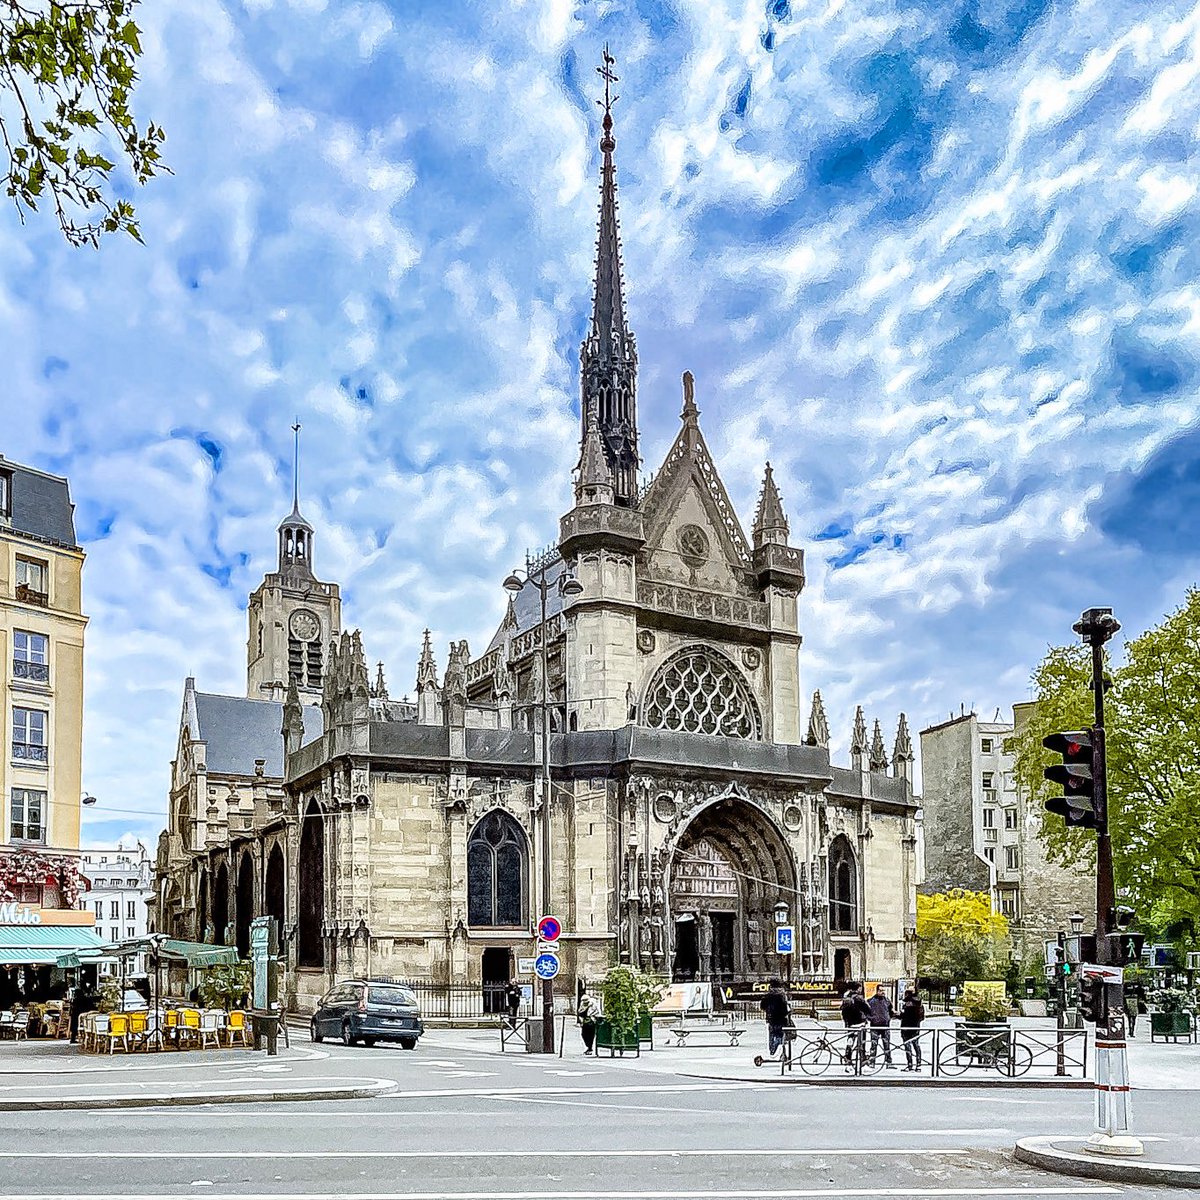 Église Saint Laurent - Paris 10

#parisladouce #paris #pariscartepostale #parisjetaime #pariscityguide #paris10  #thisisparis #visitparisregion #patrimoine #architecture #streetofparis #church #eglisesaintlaurent #parispatrimoine